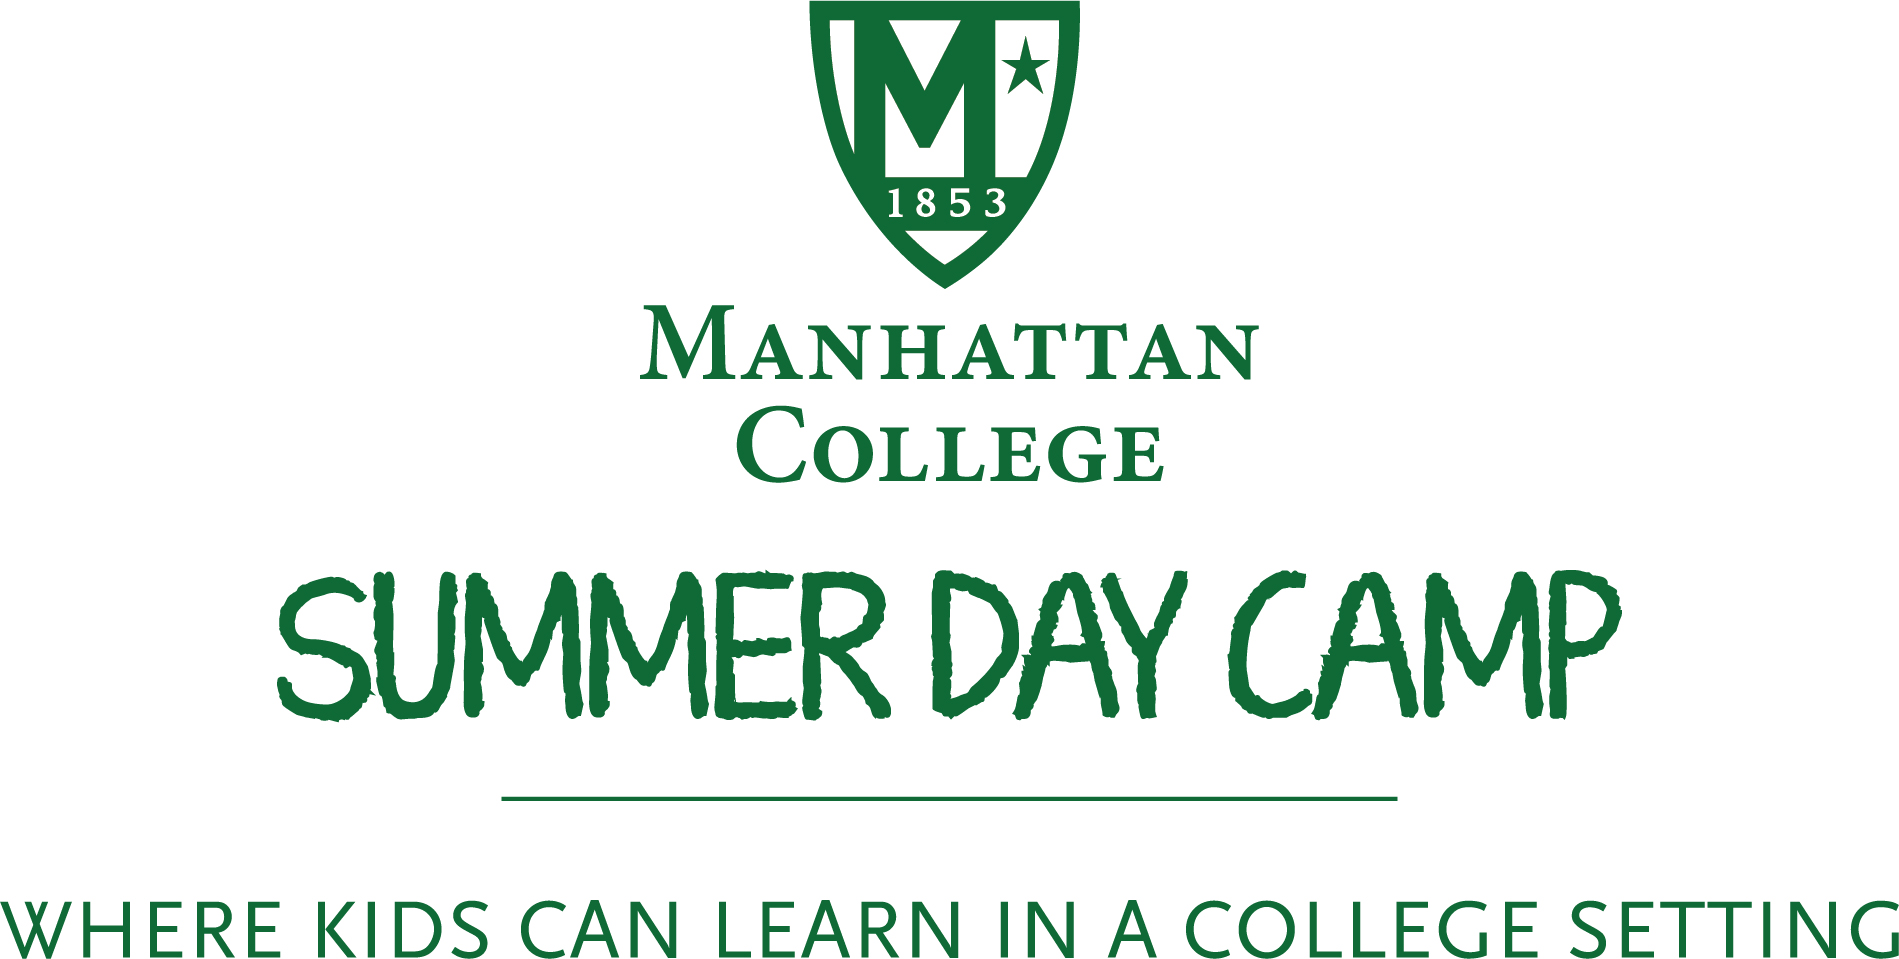 Manhattan College summer day camp logo